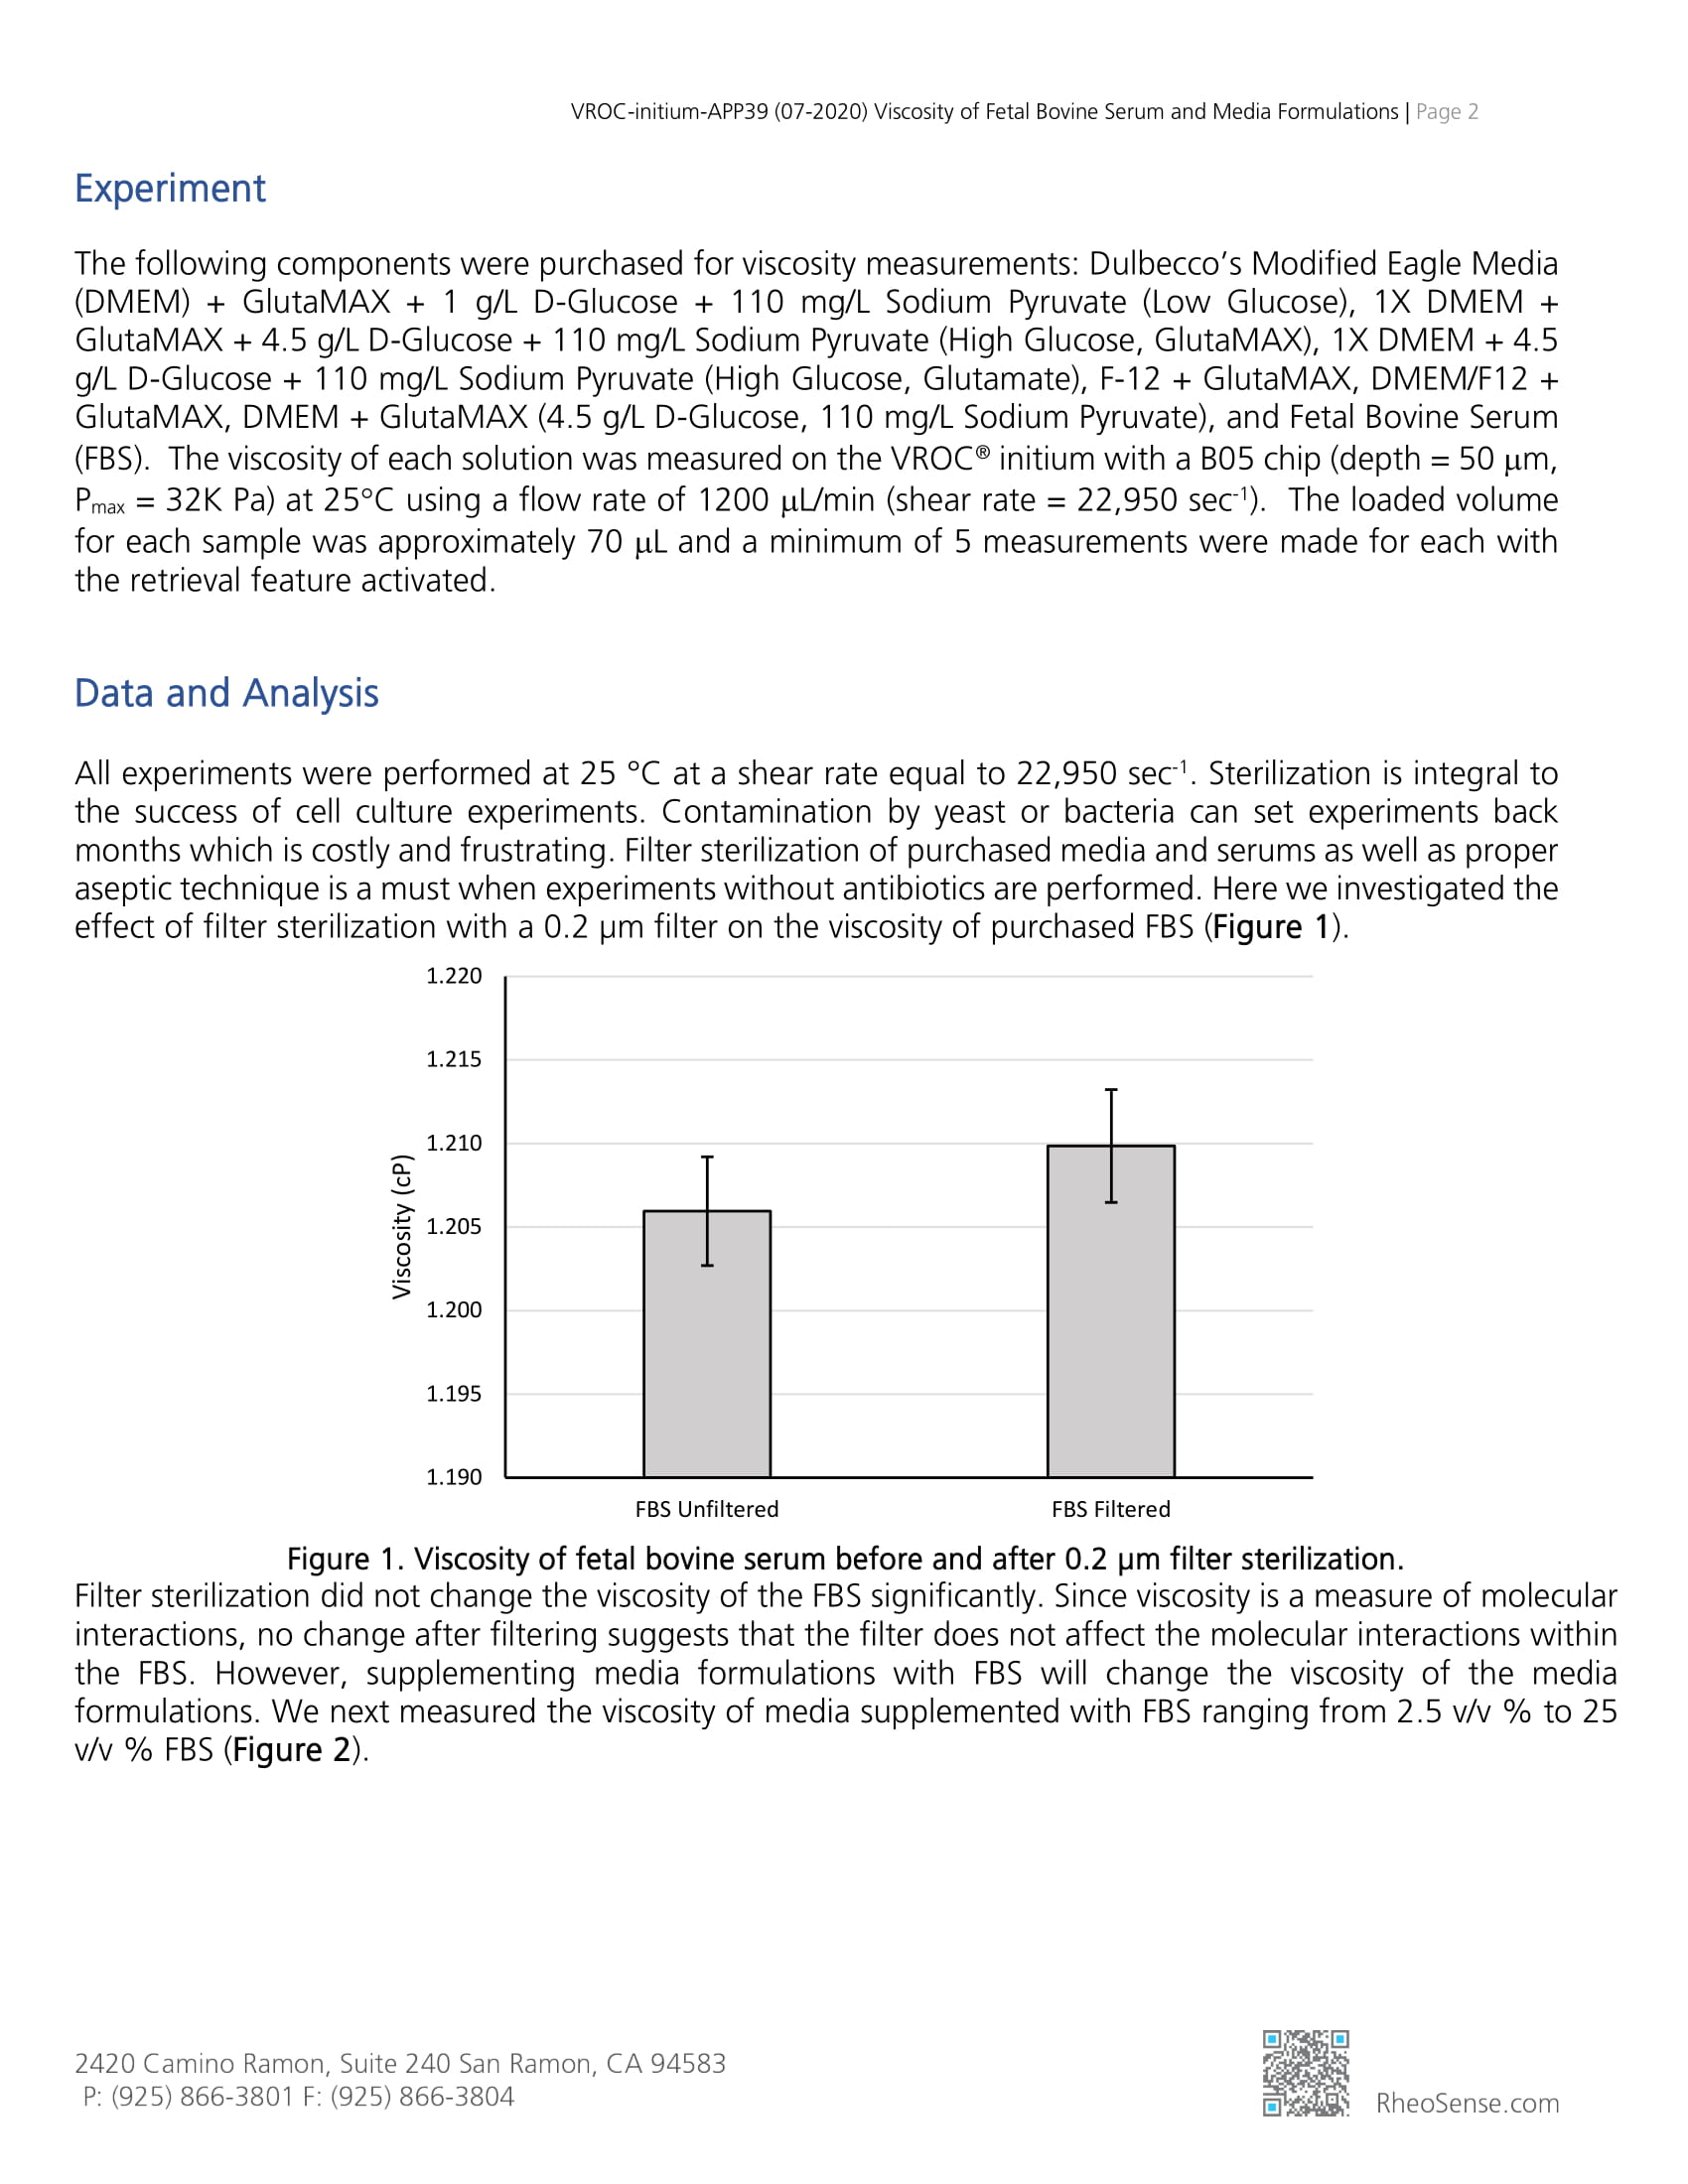 VROC-initium-APP 39 (07-2020) Viscosity of Fetal Bovine Serum and Media Formulations-2.jpg